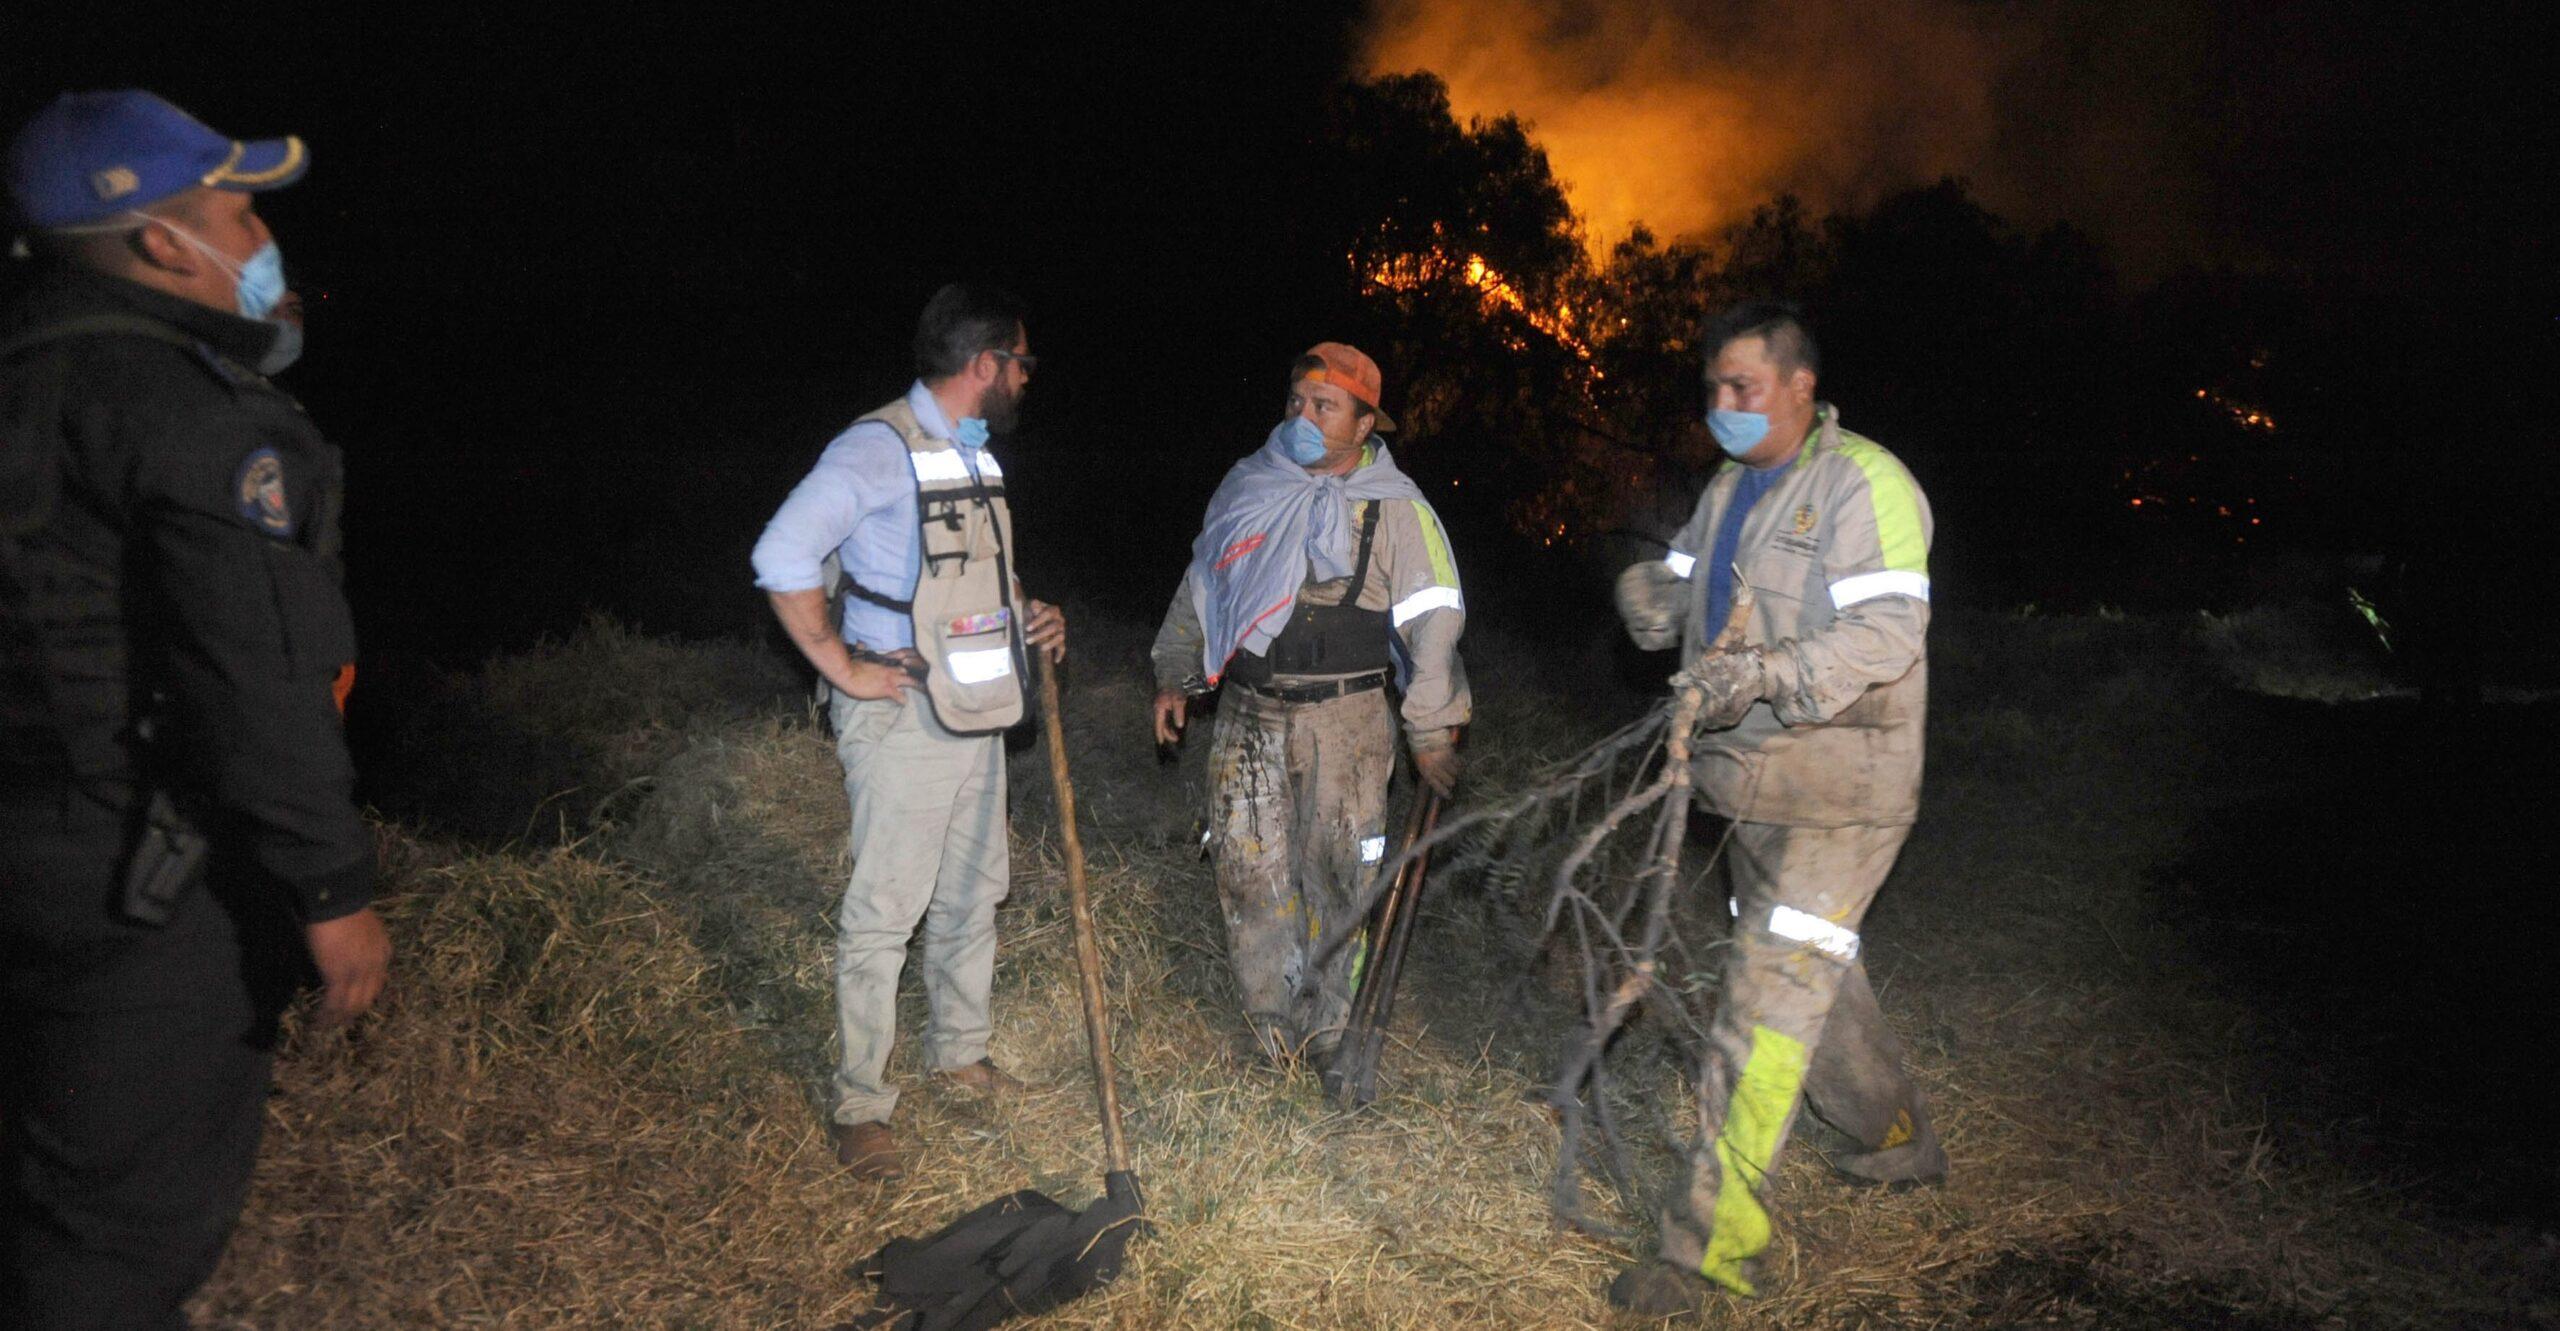 Incendios forestales han provocado la muerte de 17 voluntarios y brigadistas este año